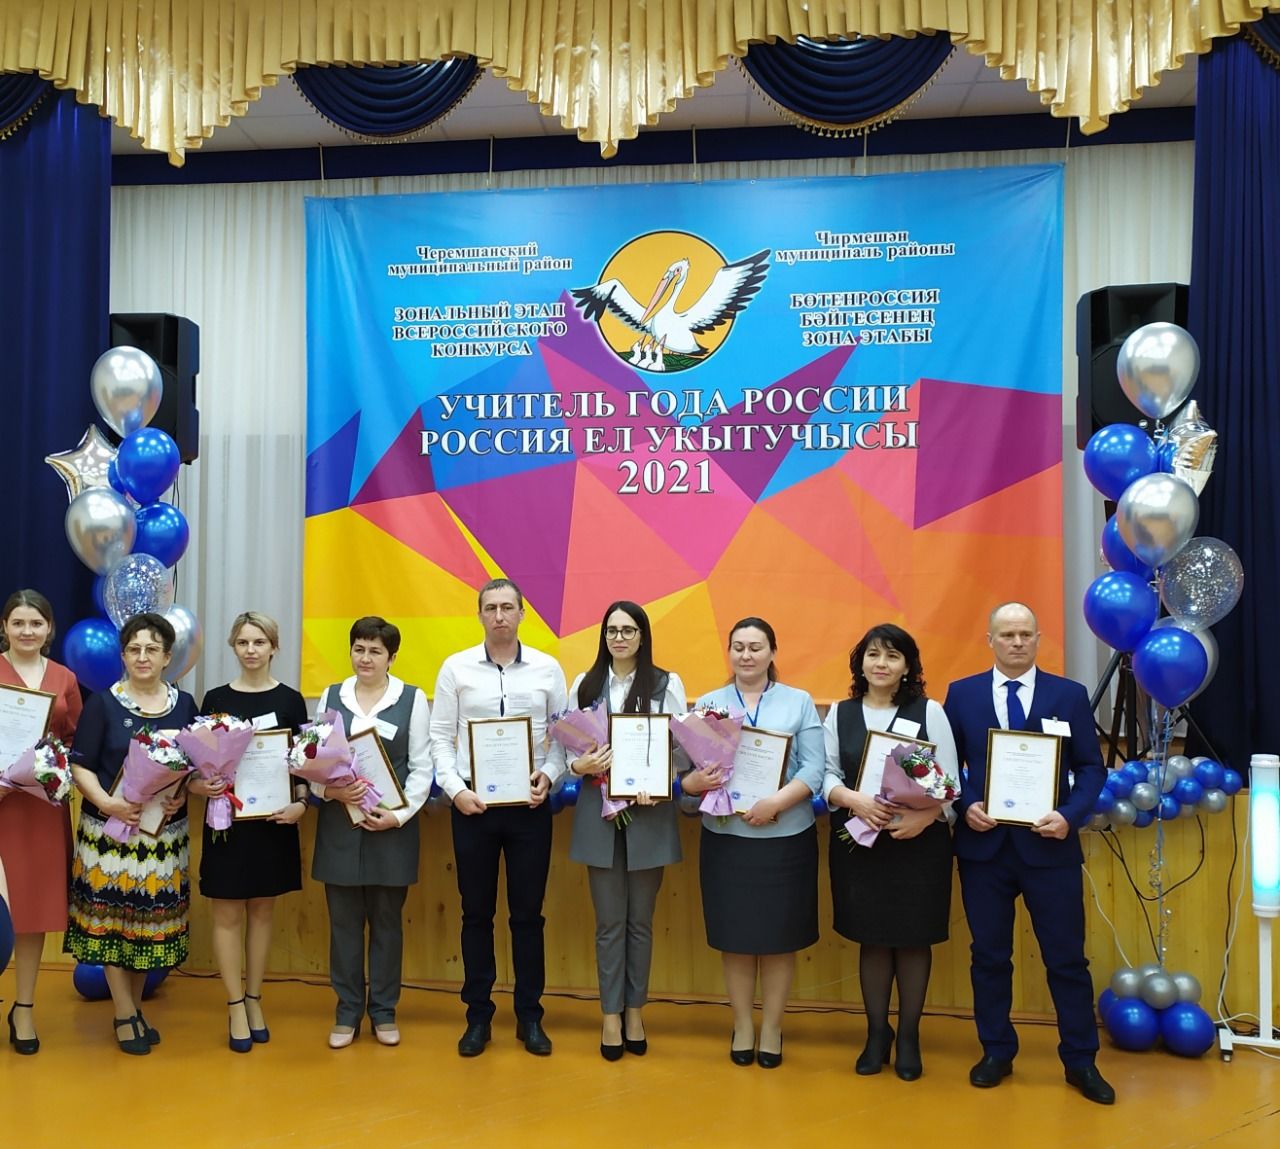 Учителя Спасского района приняли участие в зональном этапе конкурса «Учитель года России-2021» в РТ